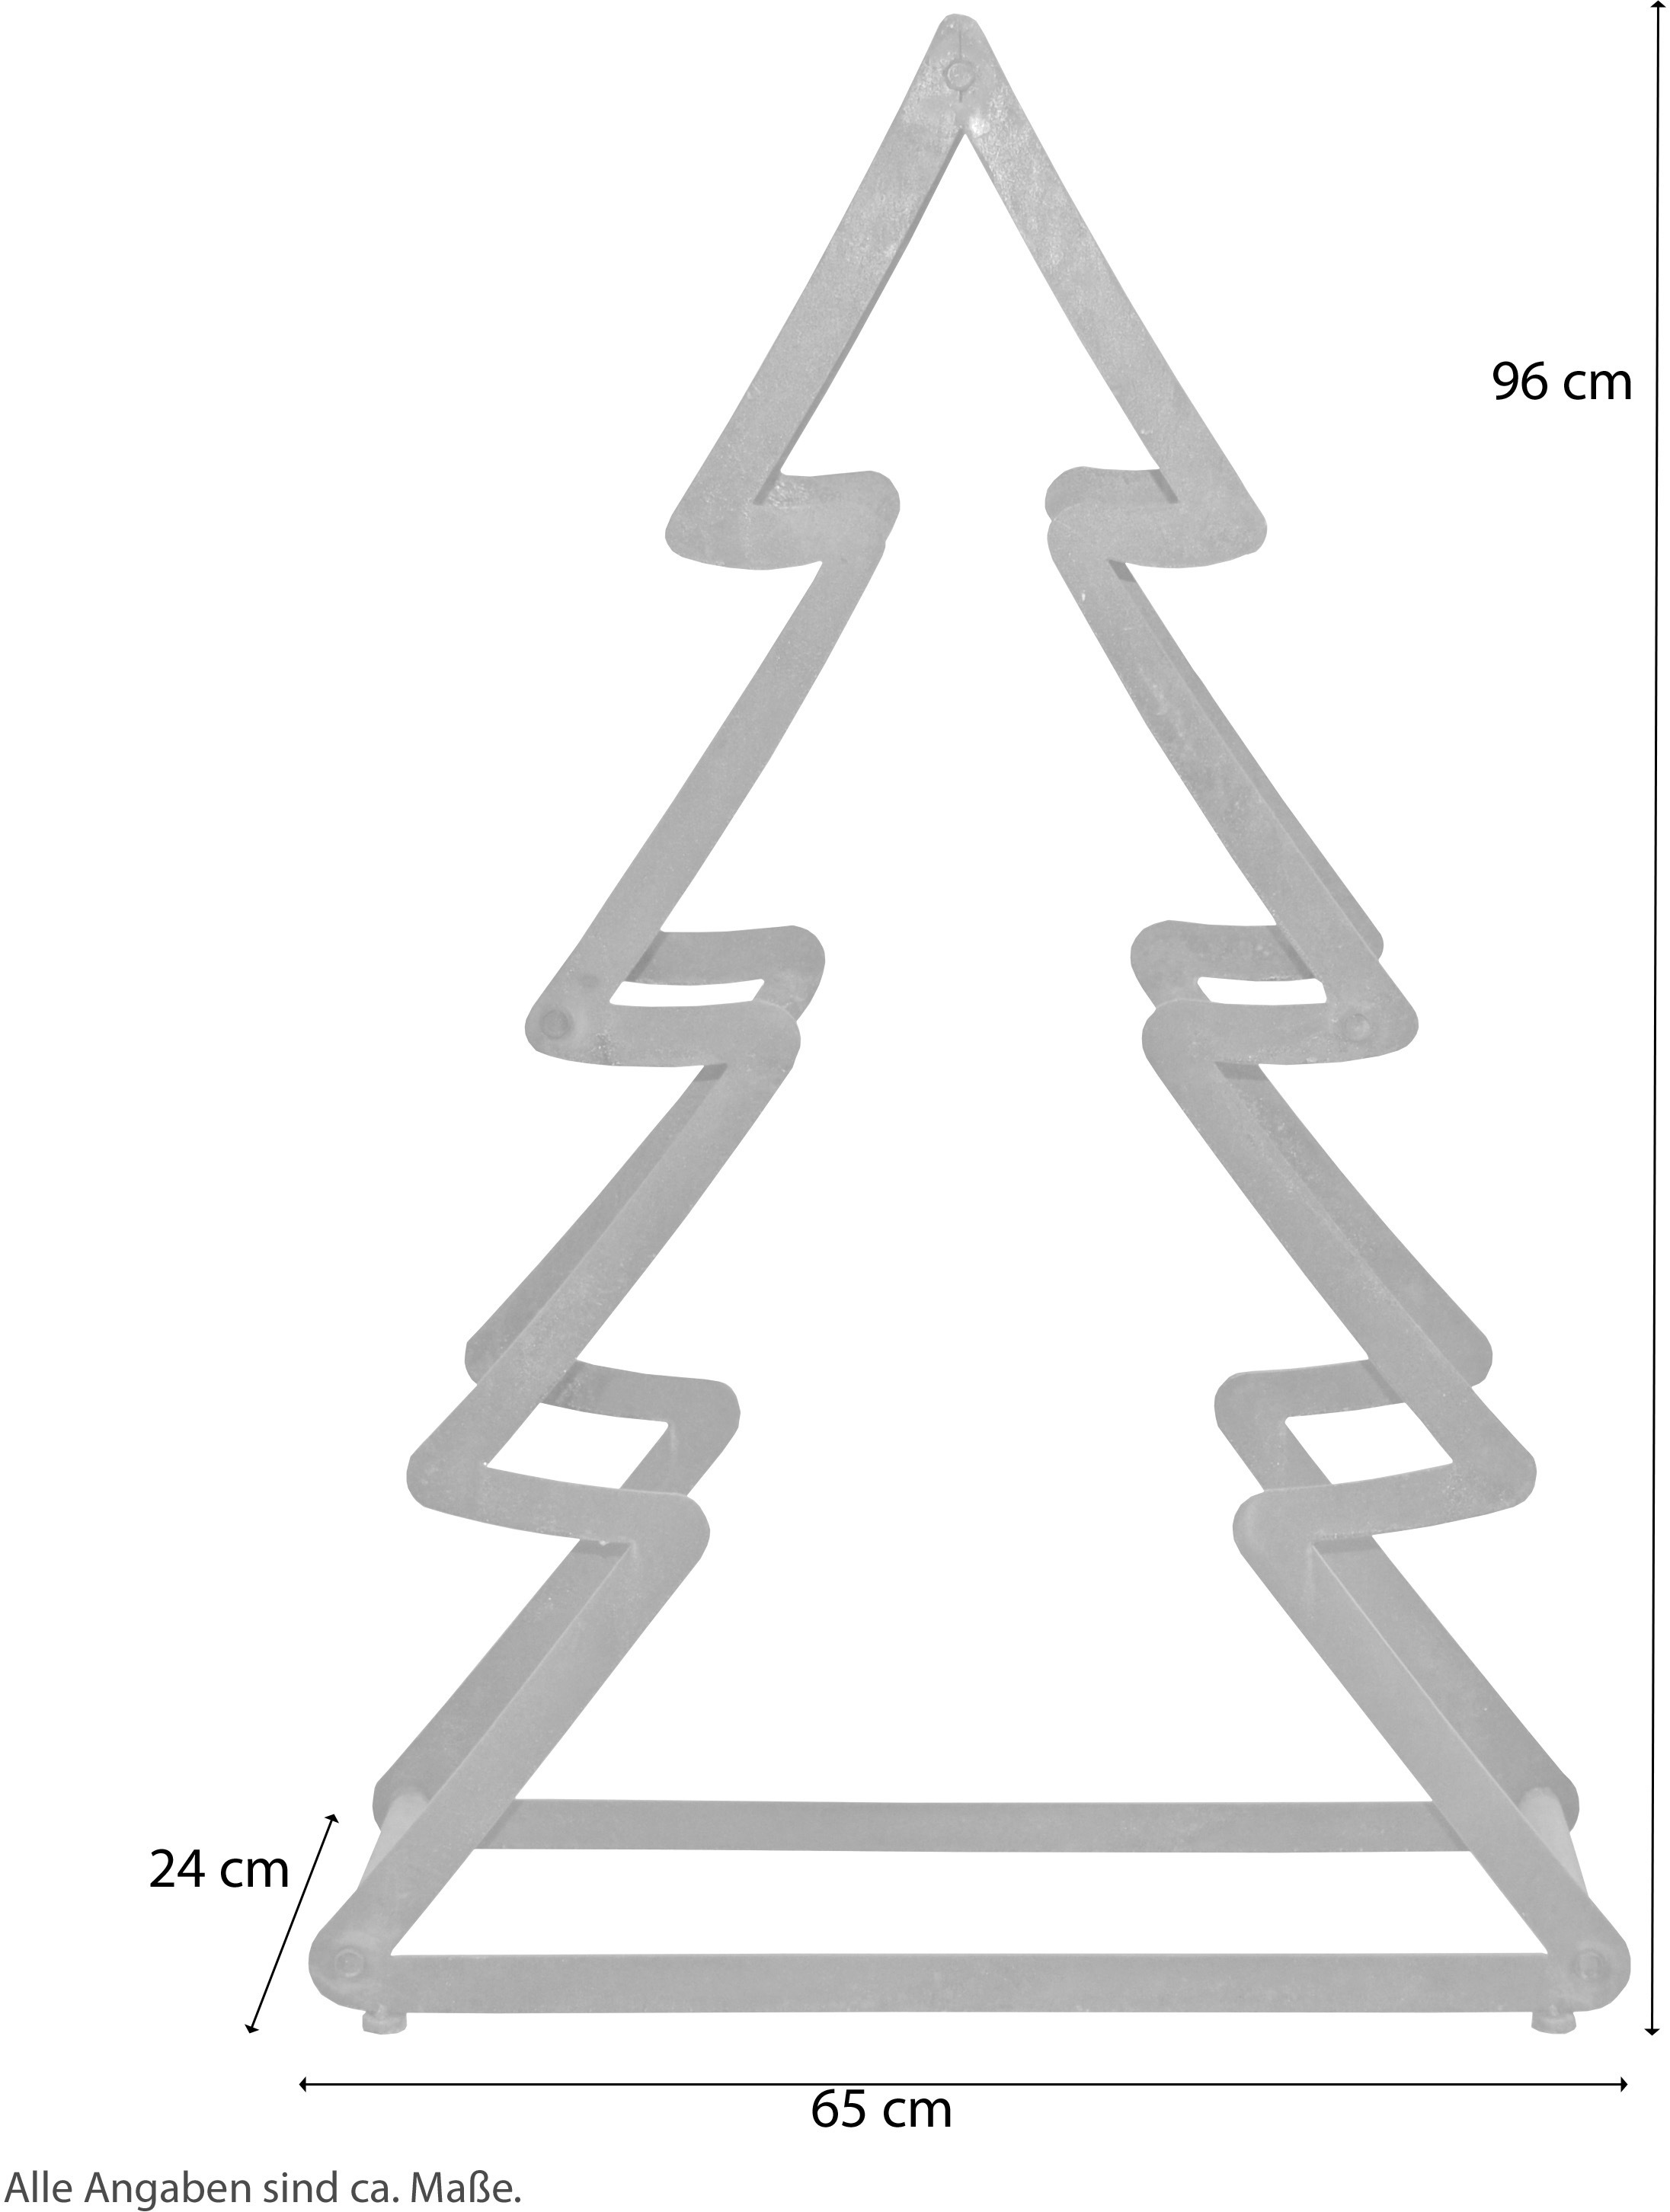 HOFMANN LIVING AND MORE Dekobaum »Weihnachtsbaum, Weihnachtsdeko aussen«, aus Metall, mit rostiger Oberfläche, Höhe ca. 95 cm